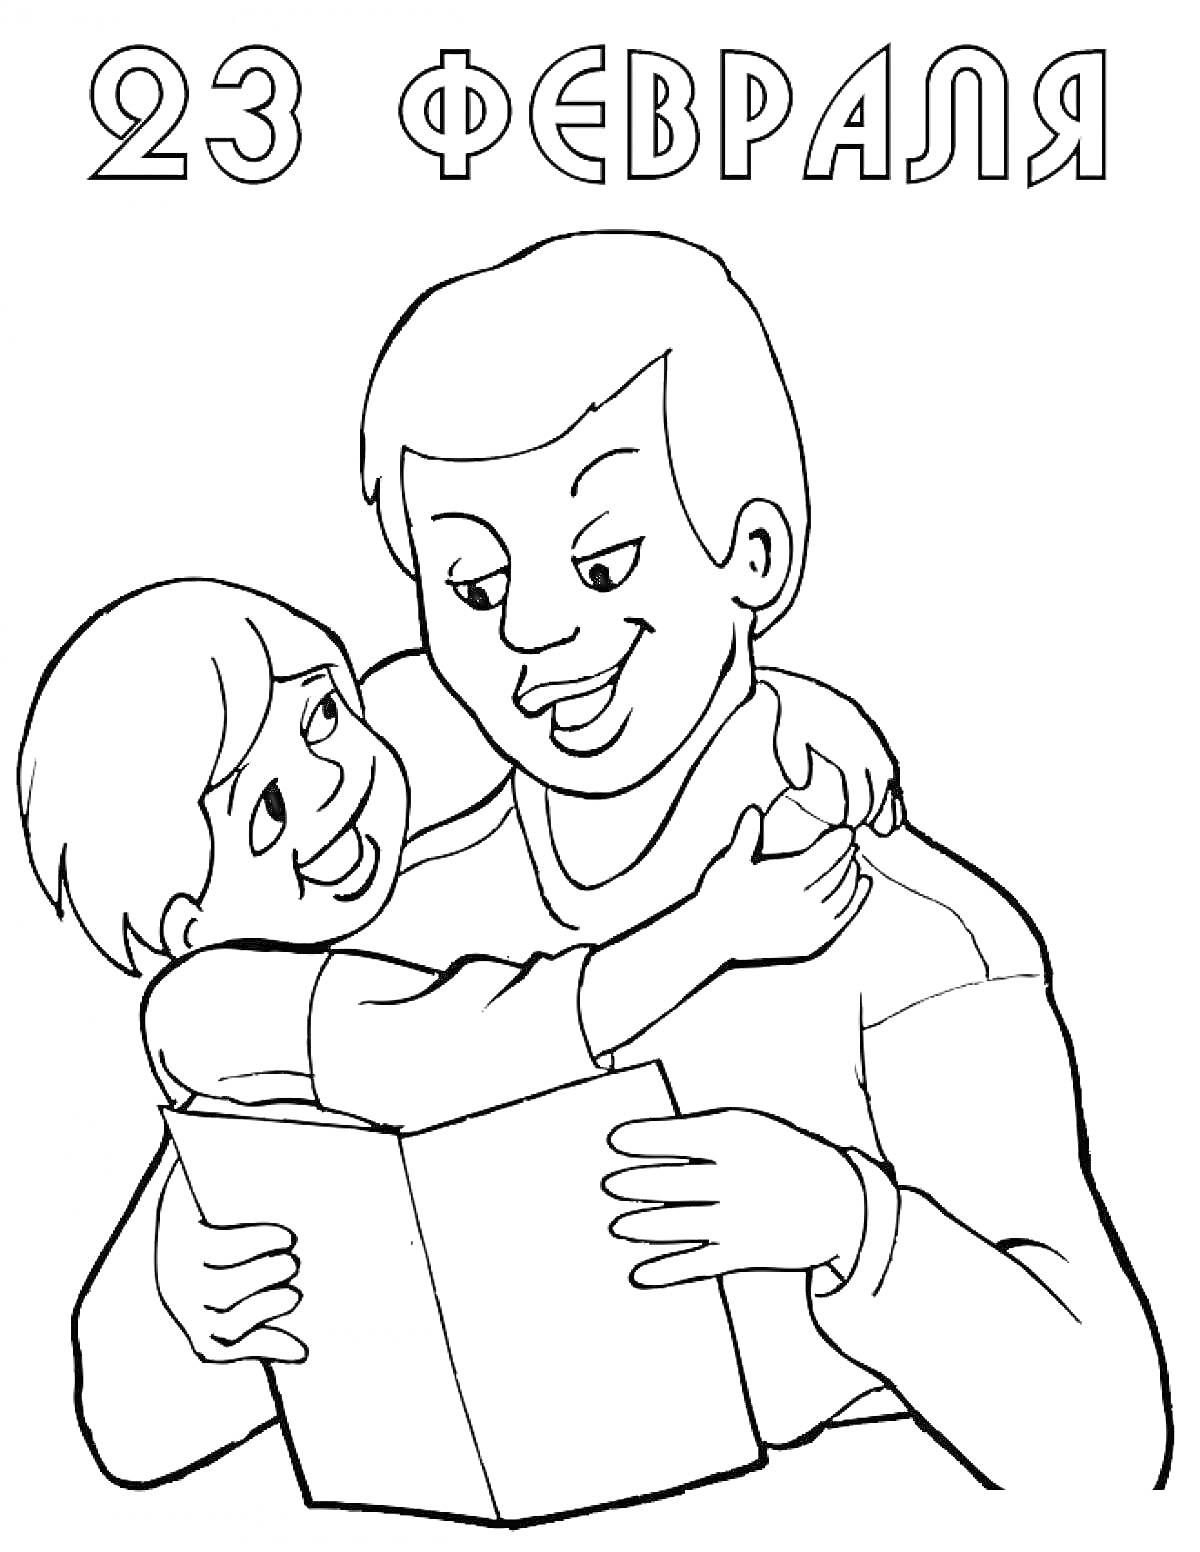 Раскраска 23 февраля, взрослый и ребенок, ребенок держит книгу, взрослый обнимает ребенка